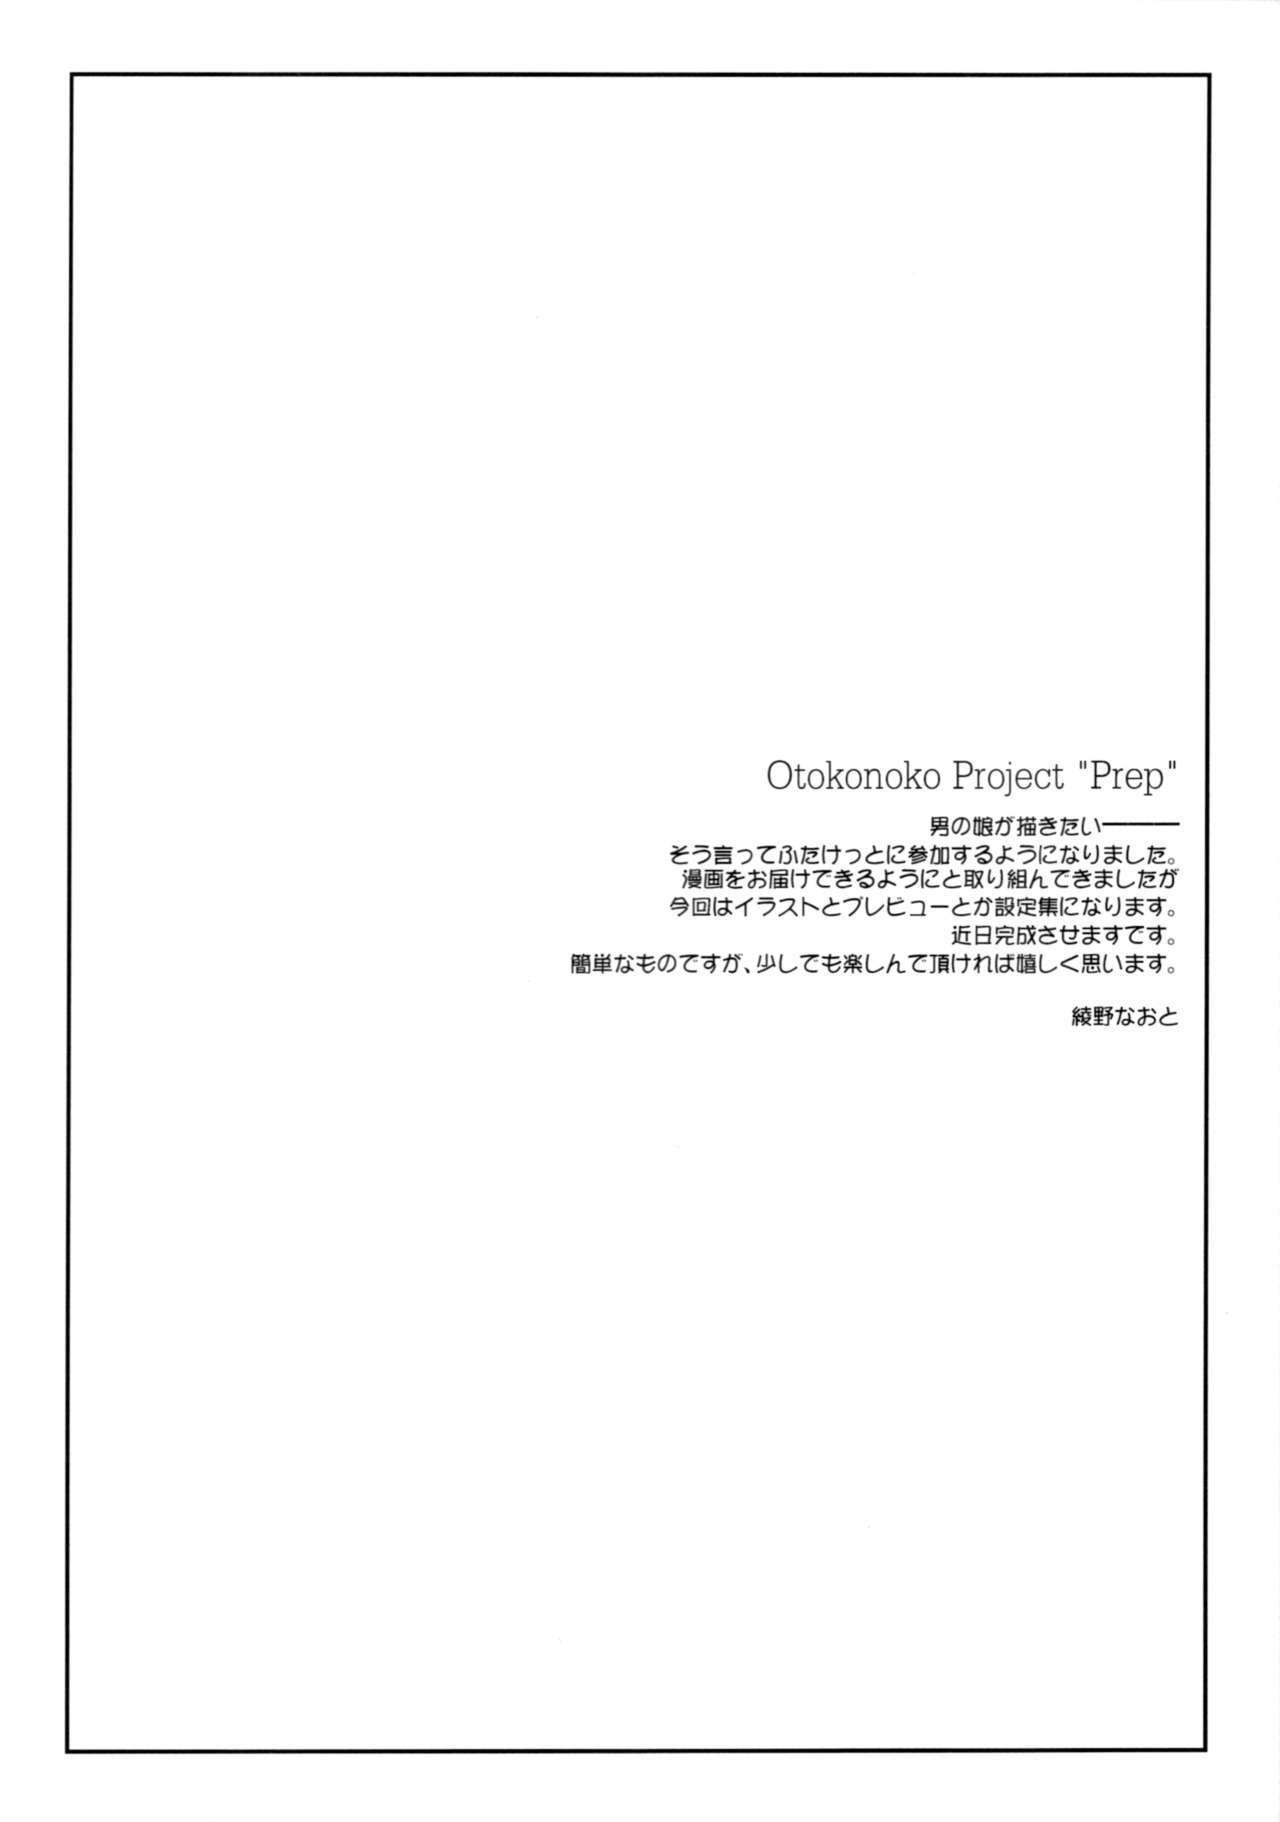 Otokonoko Project ”Prep” 2